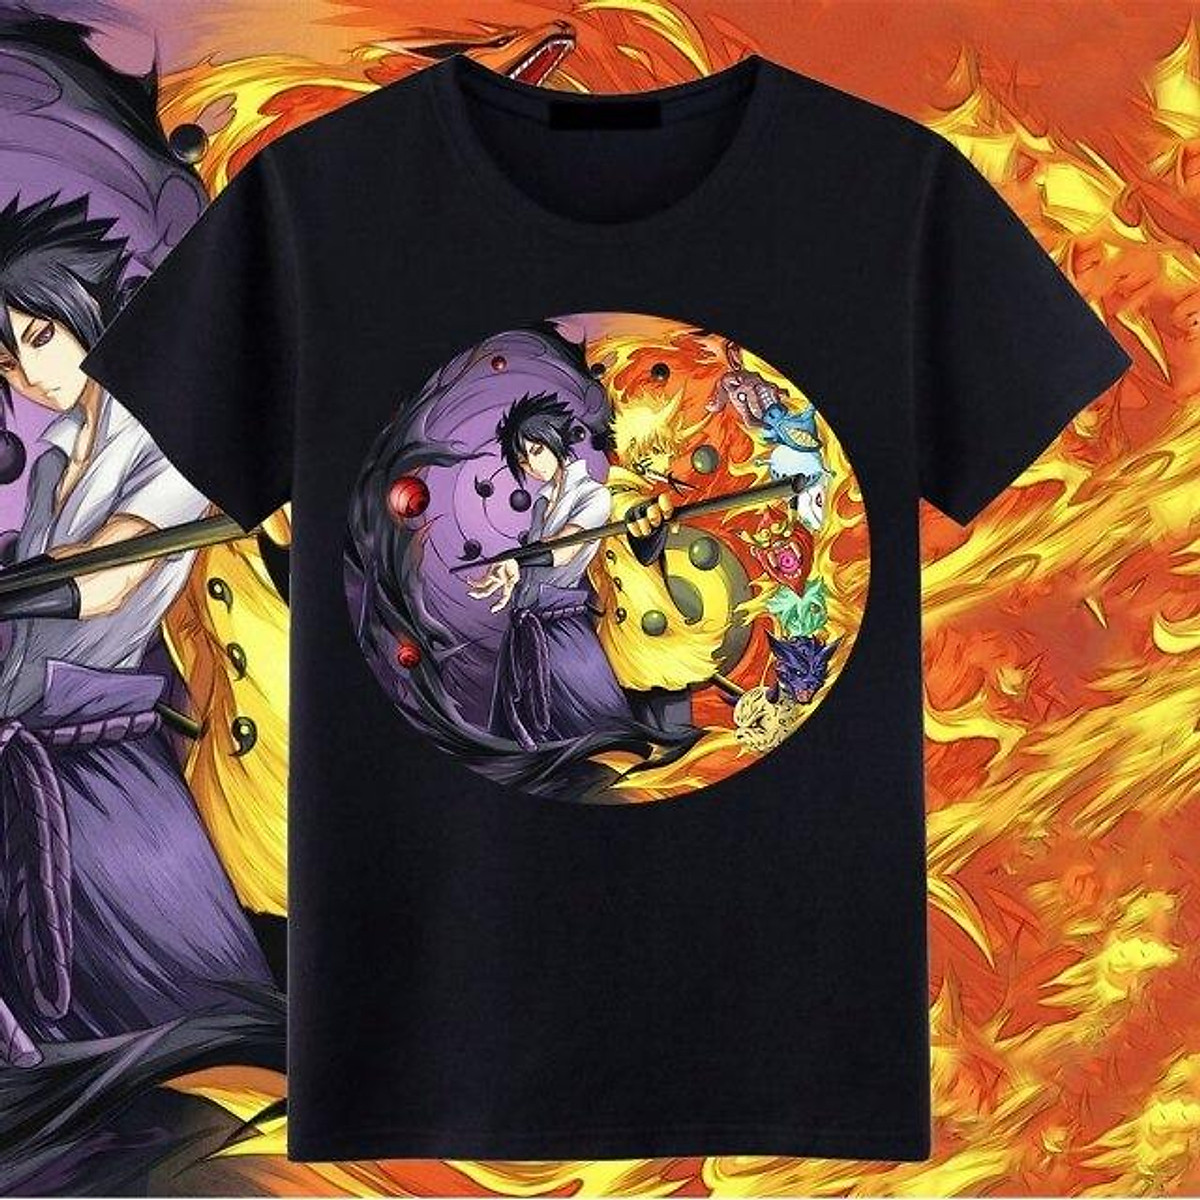 Áo thun Naruto Sasuke cực chất sẽ khiến bạn trở thành tâm điểm của mọi ánh nhìn. Mang đậm phong cách Ninja, chiếc áo này còn kết hợp hai nhân vật được yêu thích nhất trong Naruto đó chính là Naruto và Sasuke. Rất đơn giản nhưng chất lượng cao, hãy khám phá ngay!